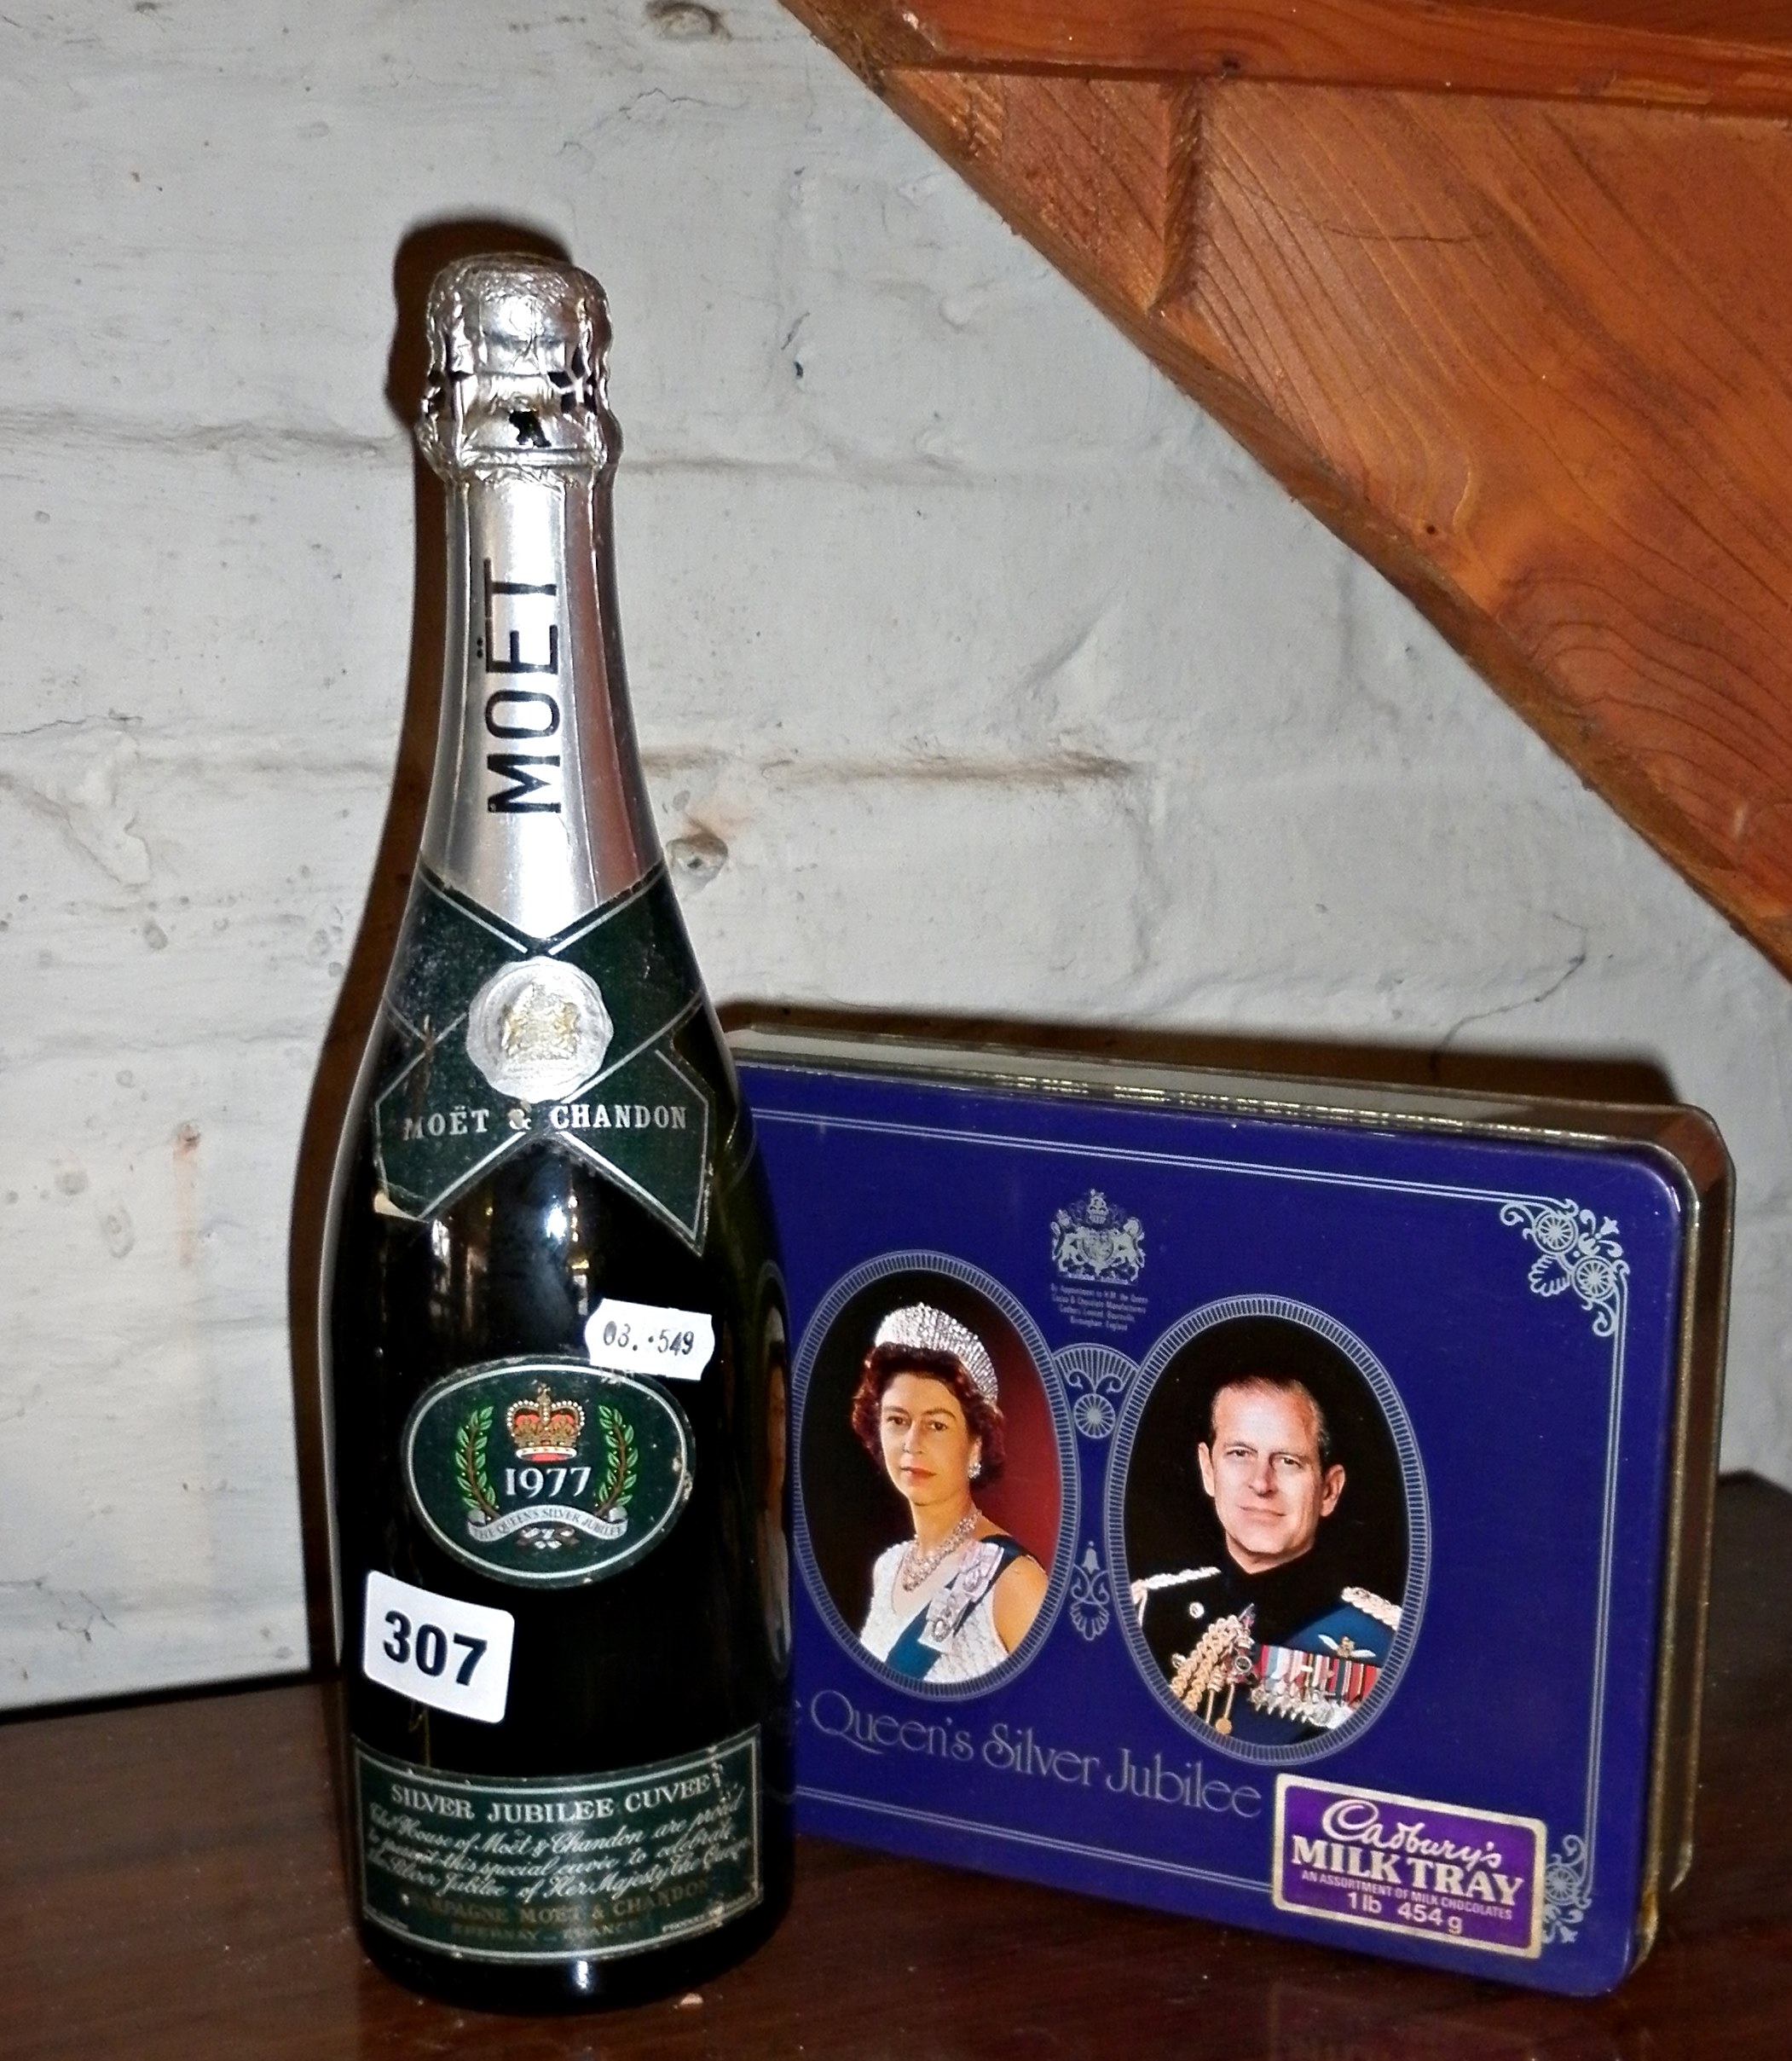 A bottle of 1977 Jubilee Moet & Chandon champagne